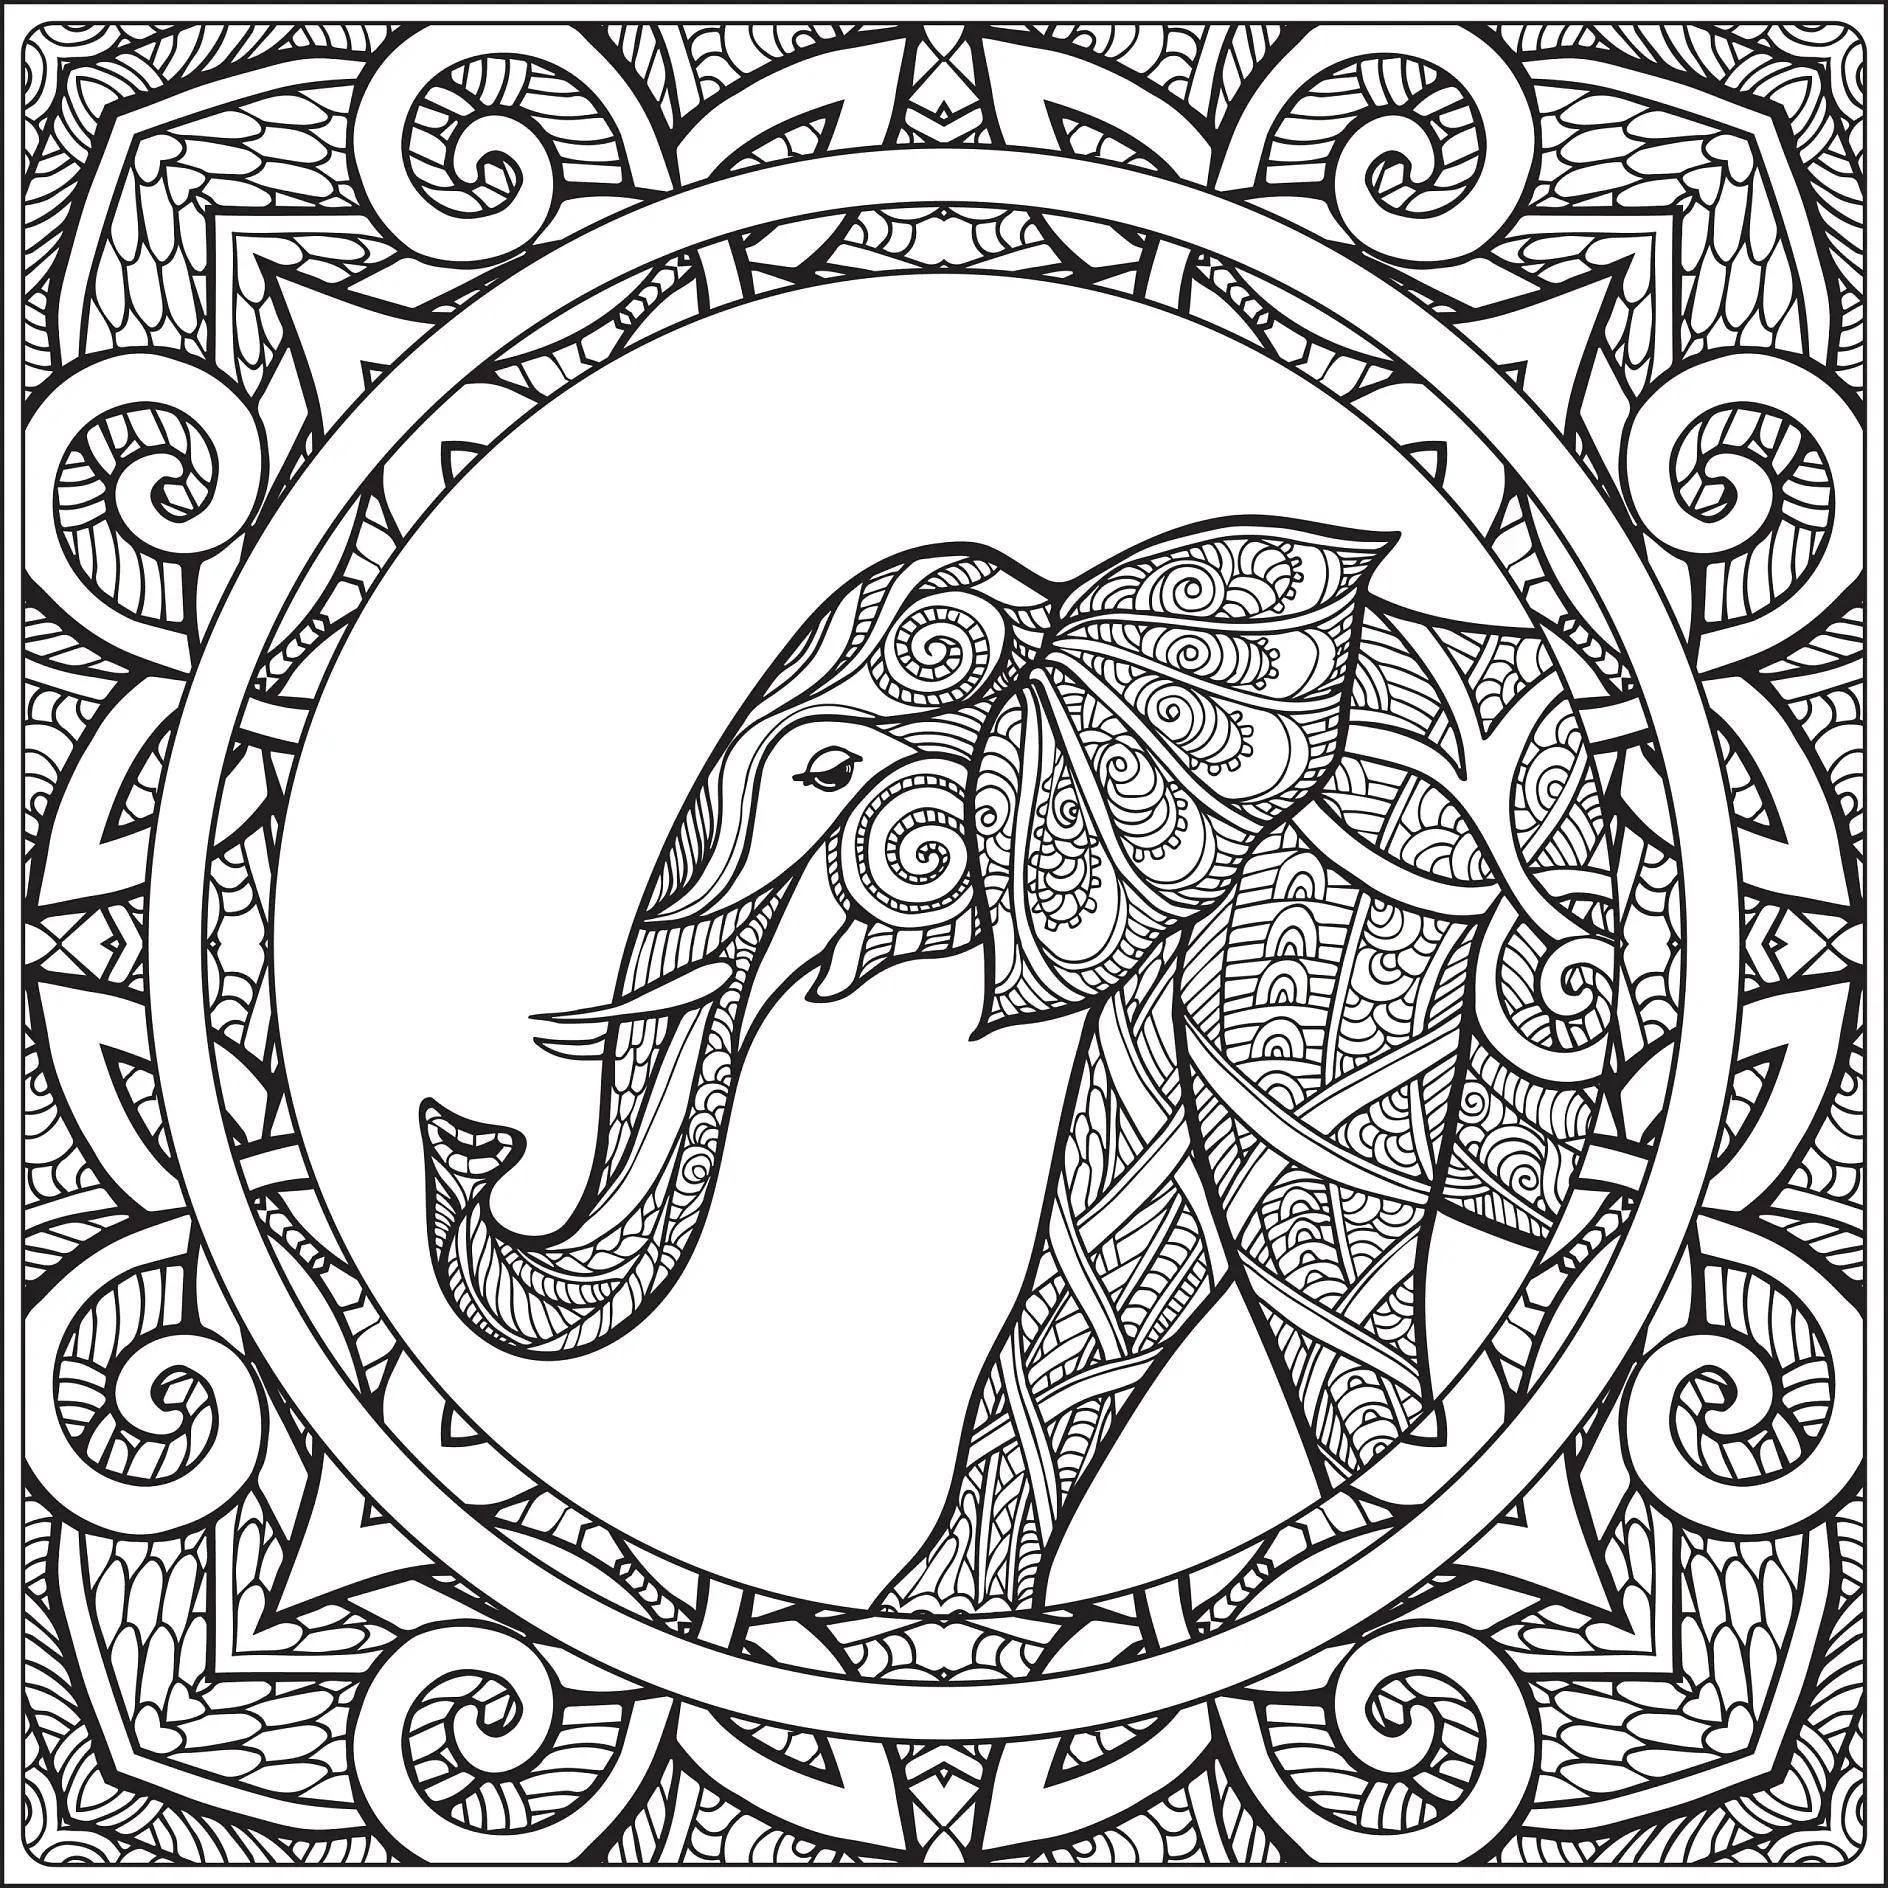 Ausmalbild Mandala Elefant mit detaillierten Ornamenten und geometrischen Mustern